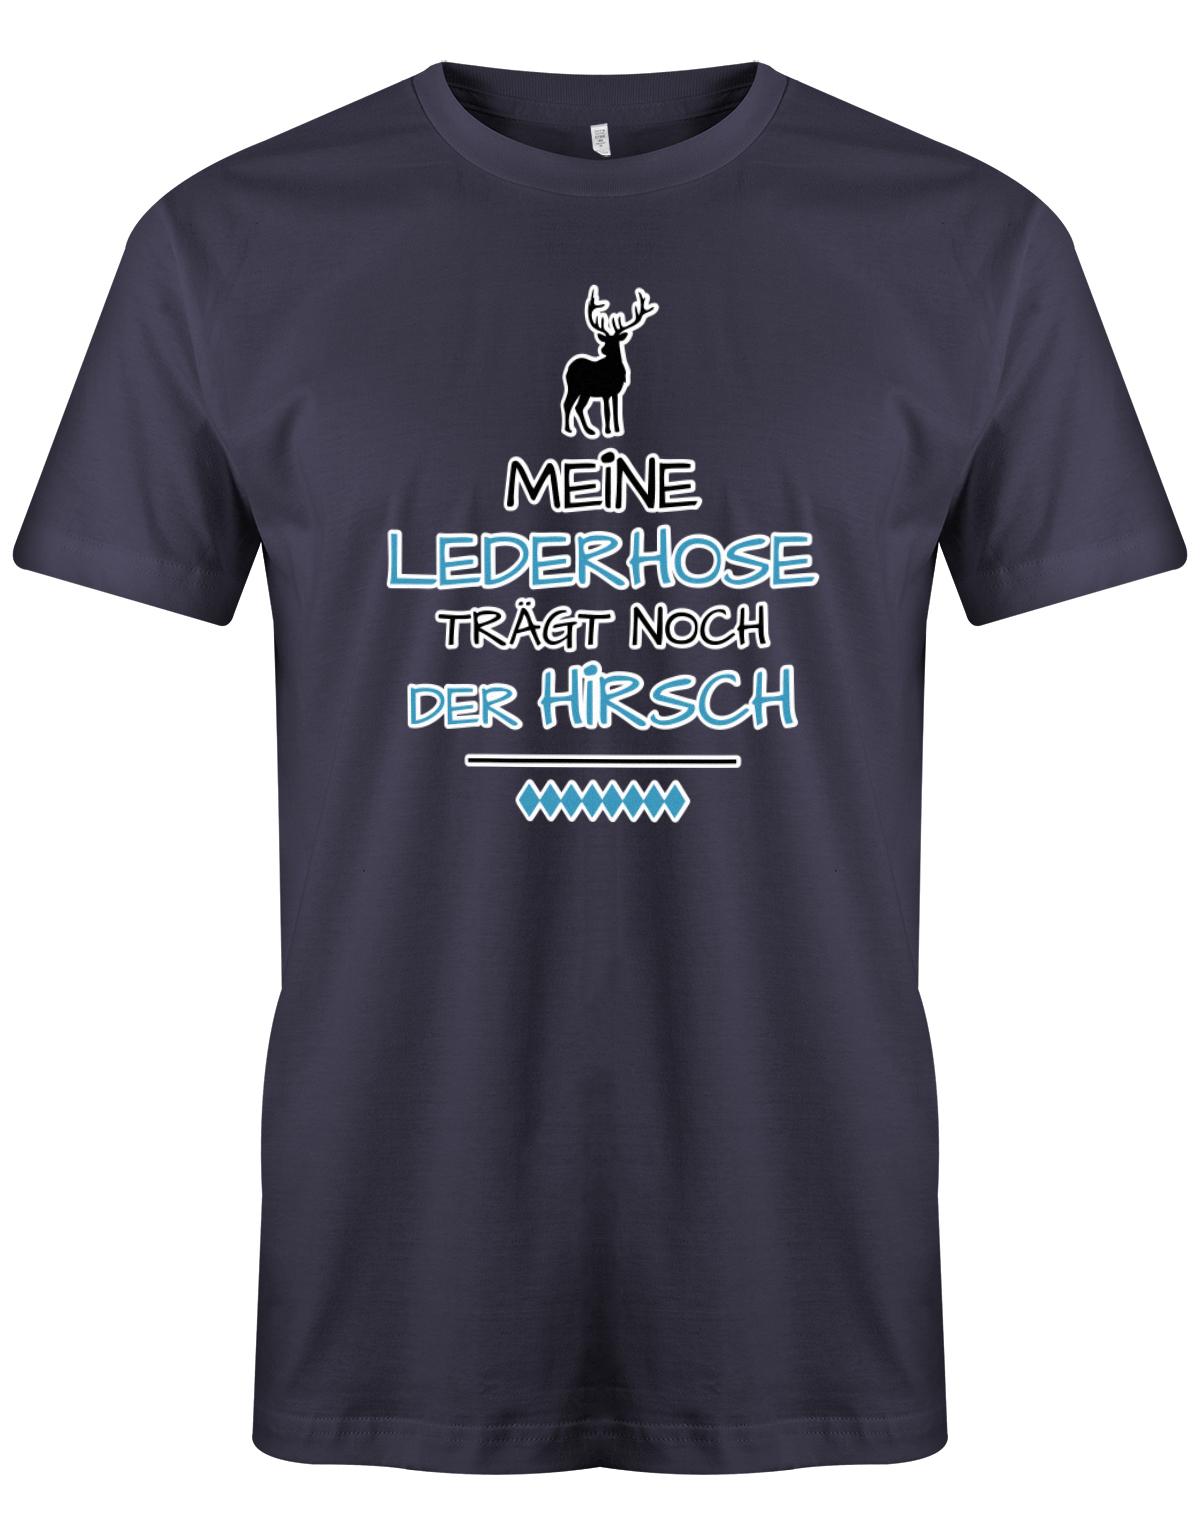 Meine-lederhose-tr-gt-noch-der-Hirsch-Digital-Herren-Shirt-navy